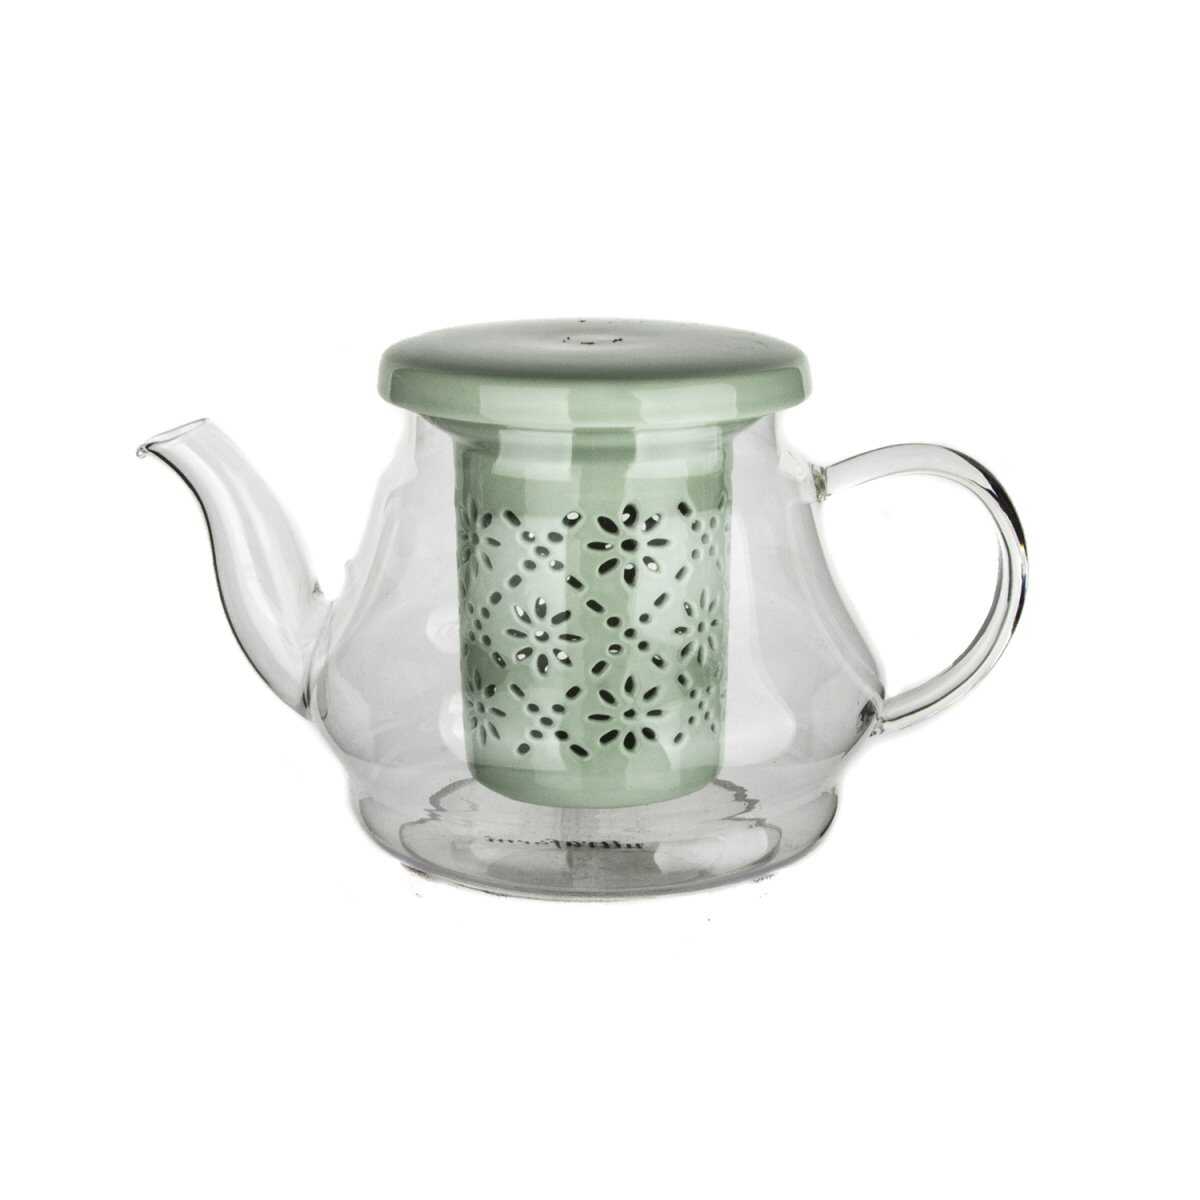 إبريق شاي من البورسلين مع مصفاة وغطاء باللون الأخضر